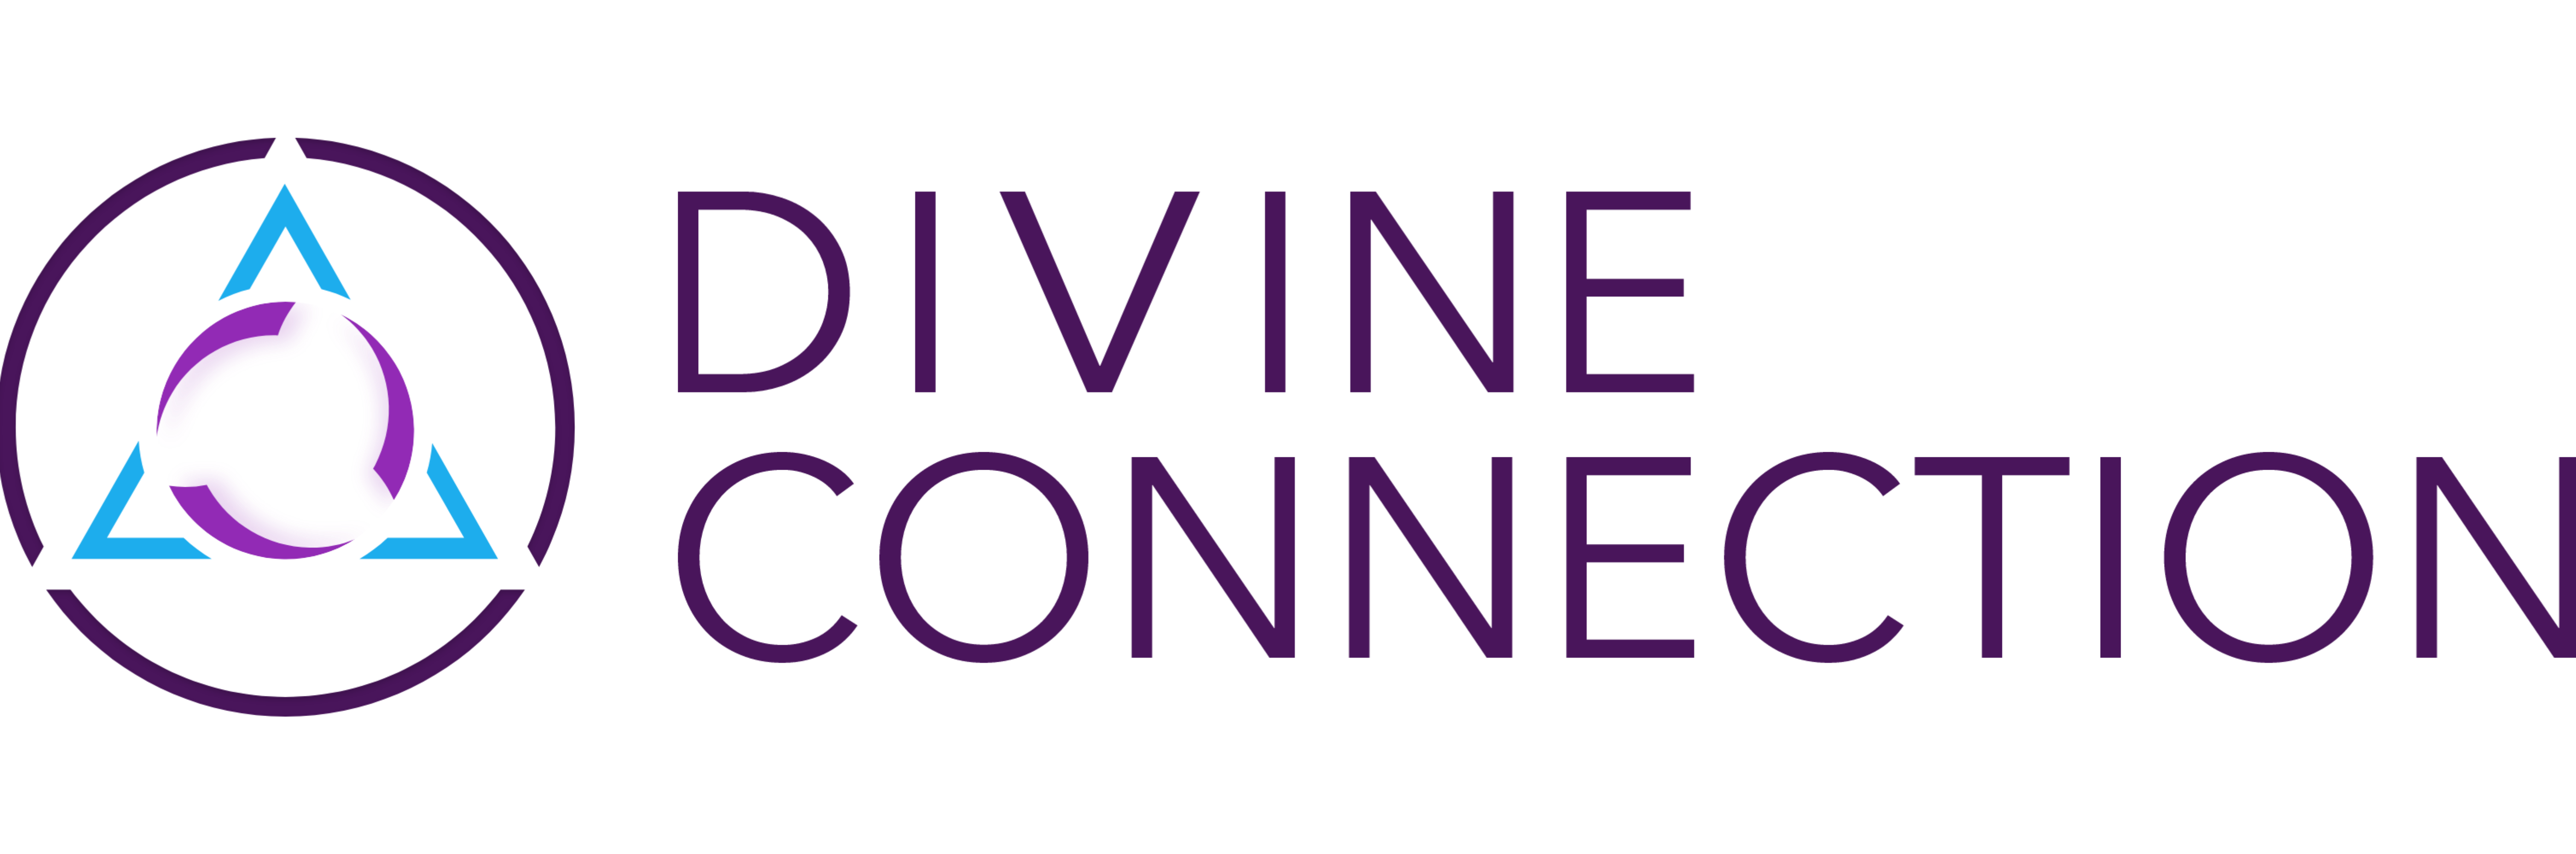 divine-connection-logo-1